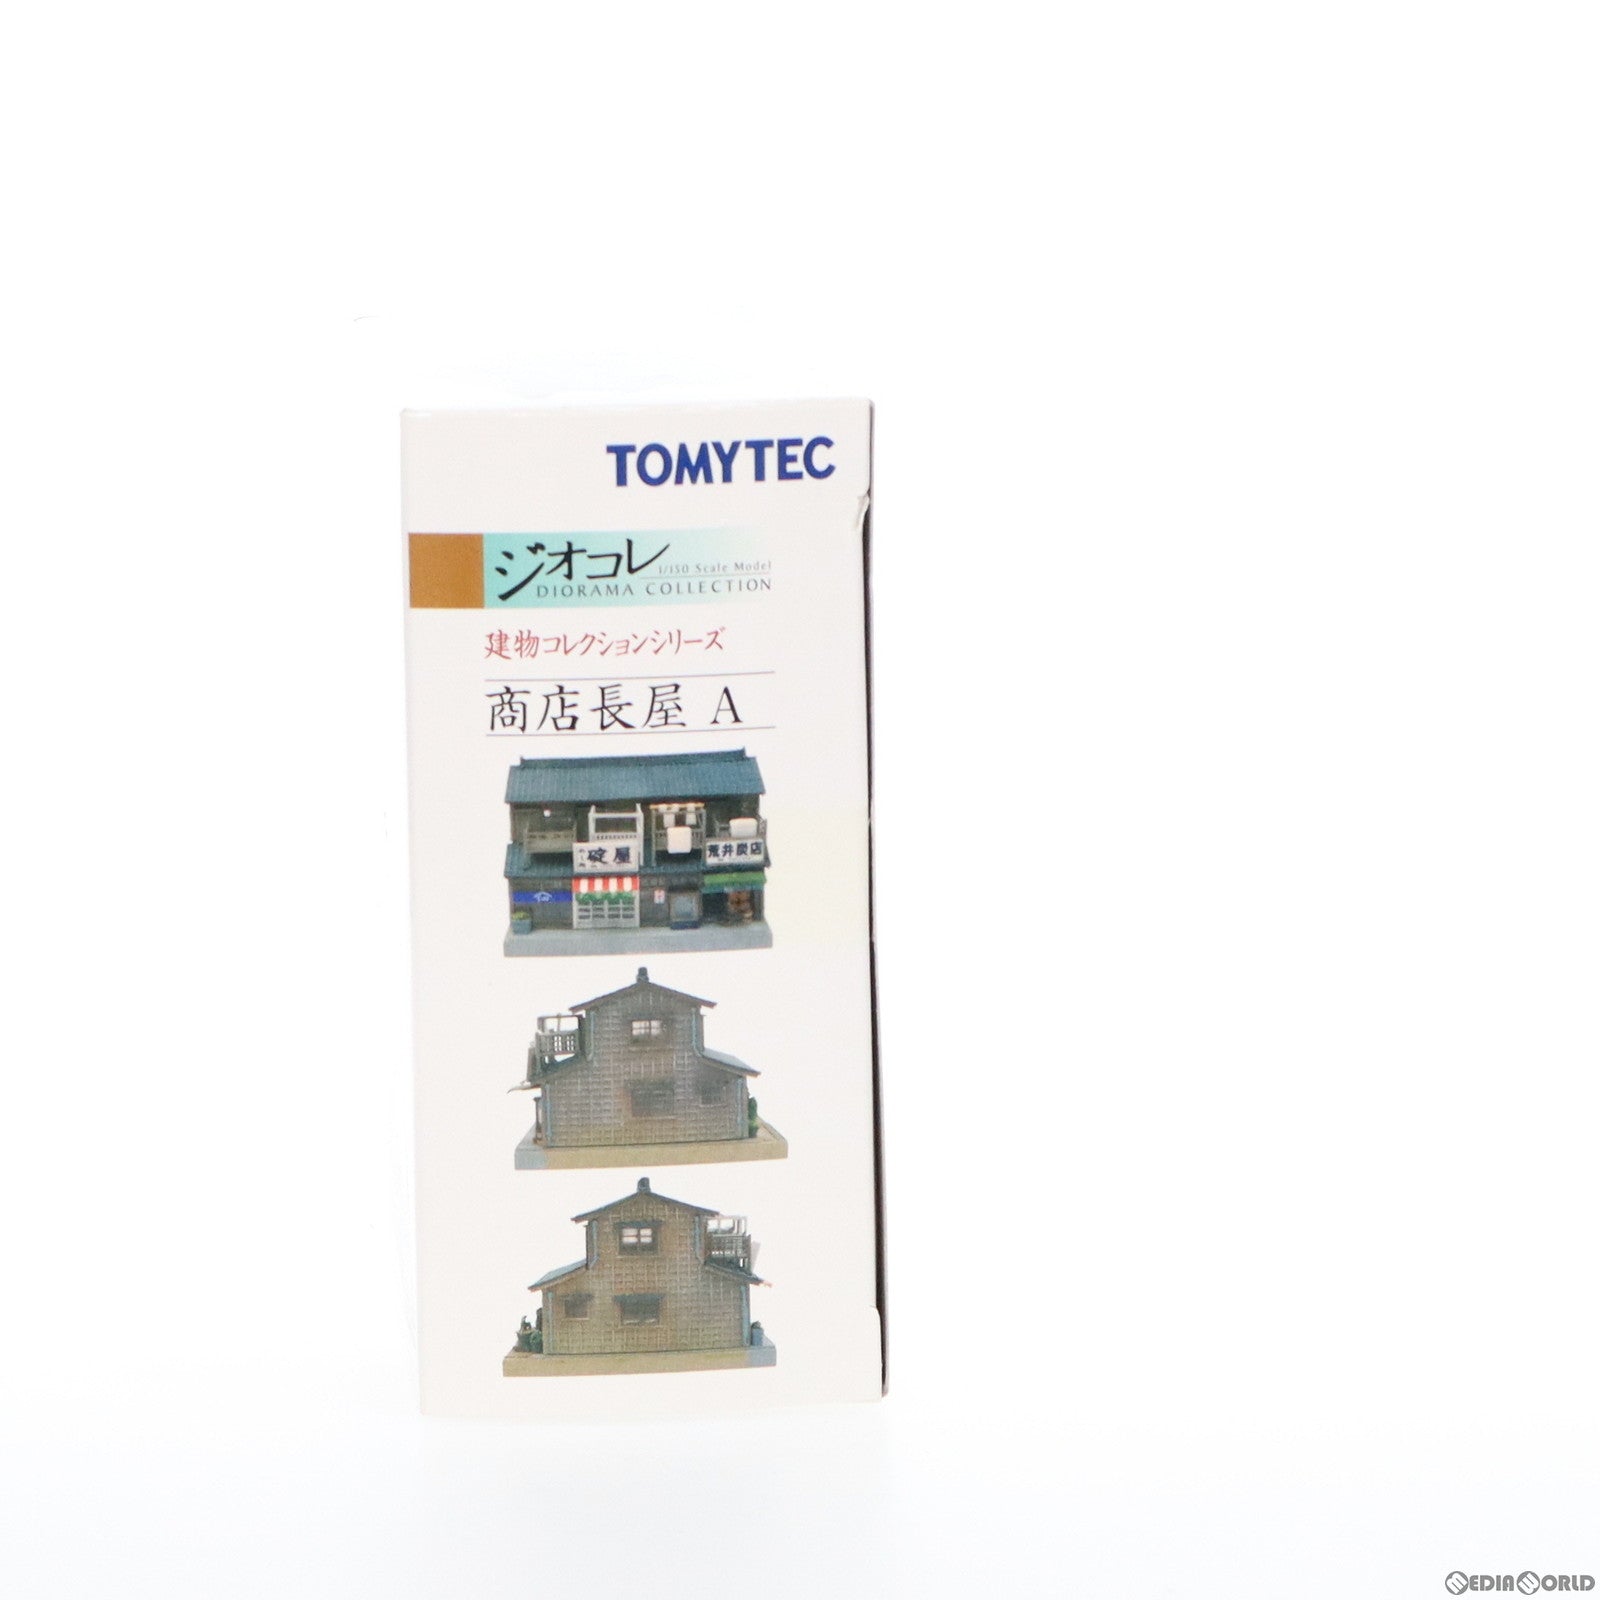 【中古即納】[RWM]224280 建物コレクション(建コレ) 054 商店長屋A Nゲージ 鉄道模型 TOMYTEC(トミーテック)(20100331)